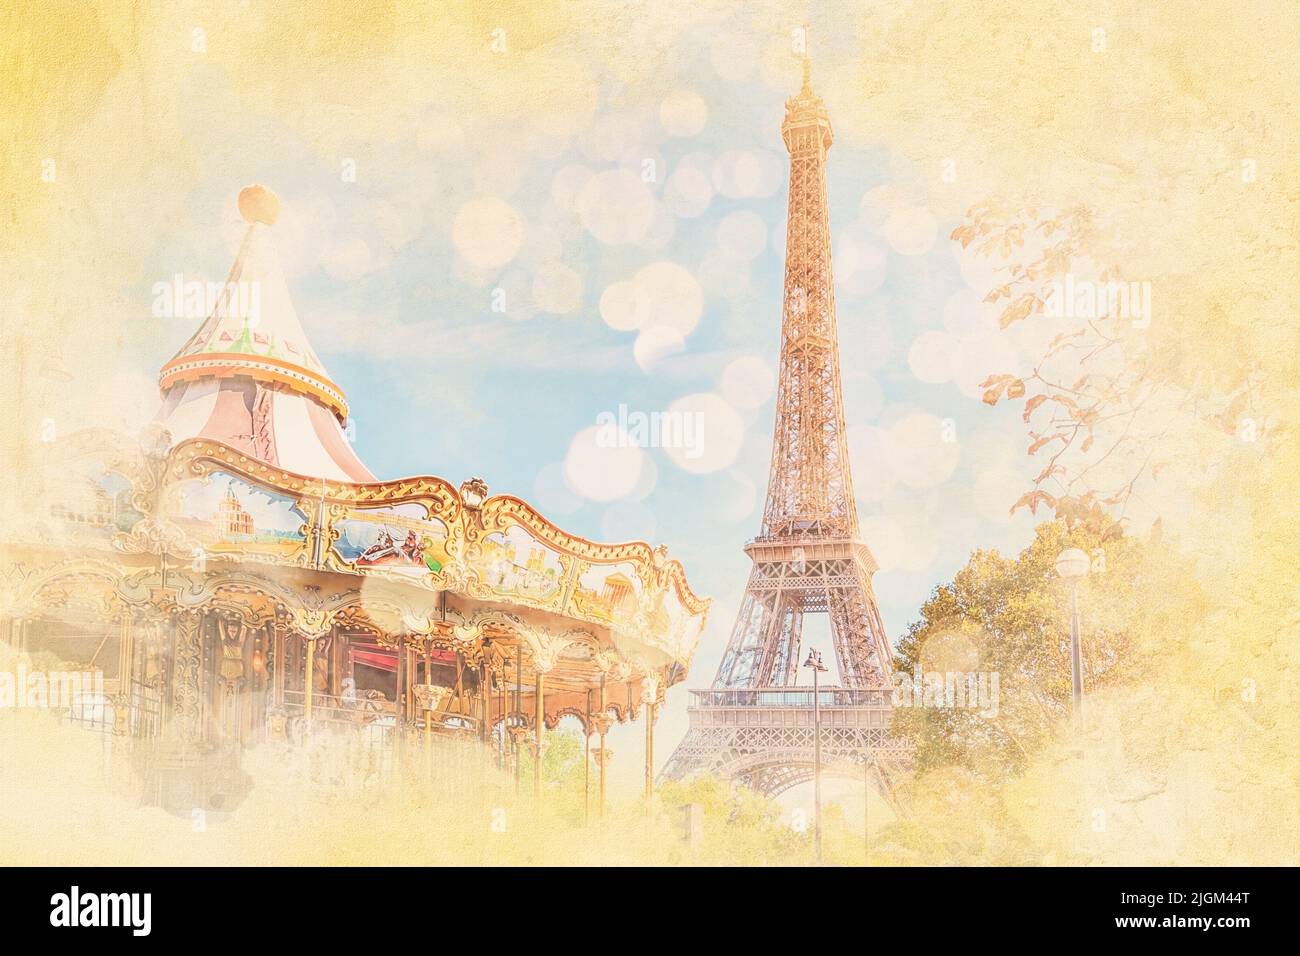 Carrousel et Tour Eiffel à Paris - Illustration effet aquarelle Banque D'Images